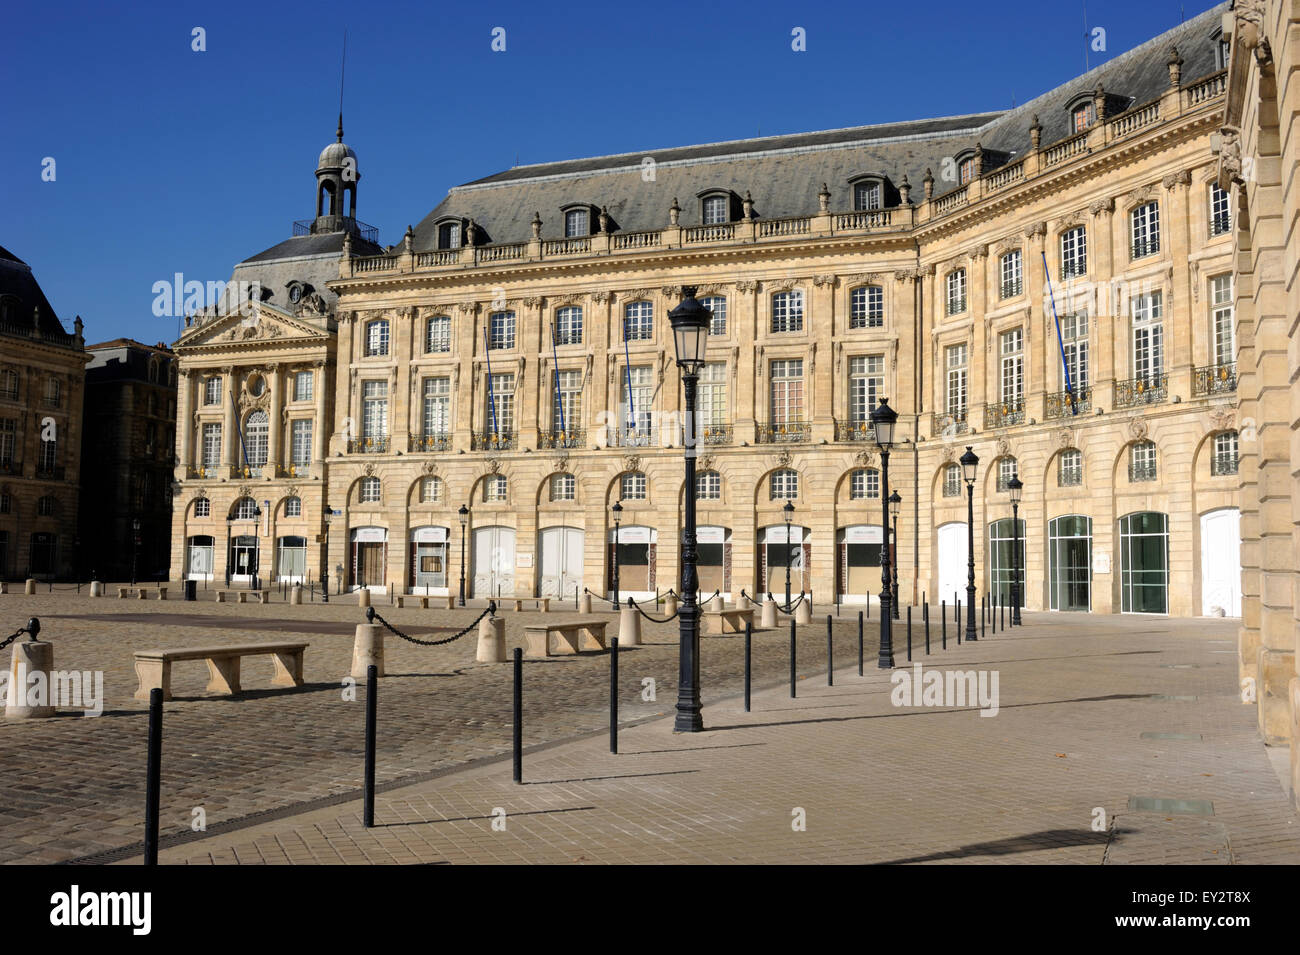 France, Bordeaux, Place de la Bourse Stock Photo